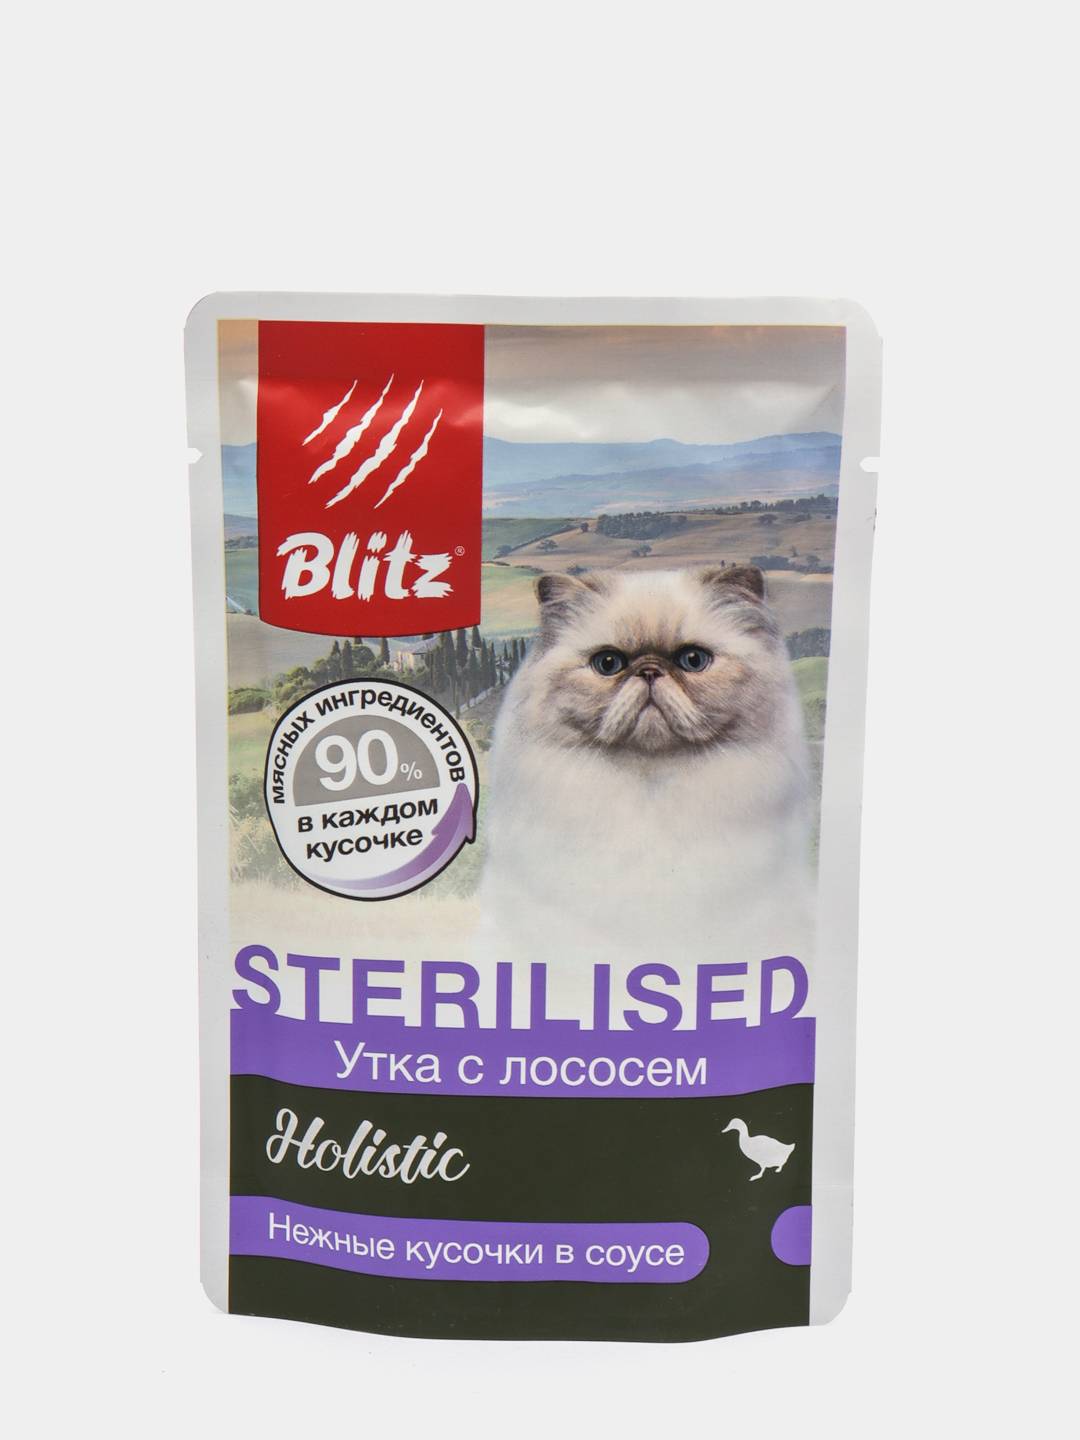 Влажный корм blitz для кошек. Blitz Holistic «утка с лососем». Blitz Holistic для кошек. Blitz корм для стерилизованных кошек. Холистик корм влажный блитз для кошек.